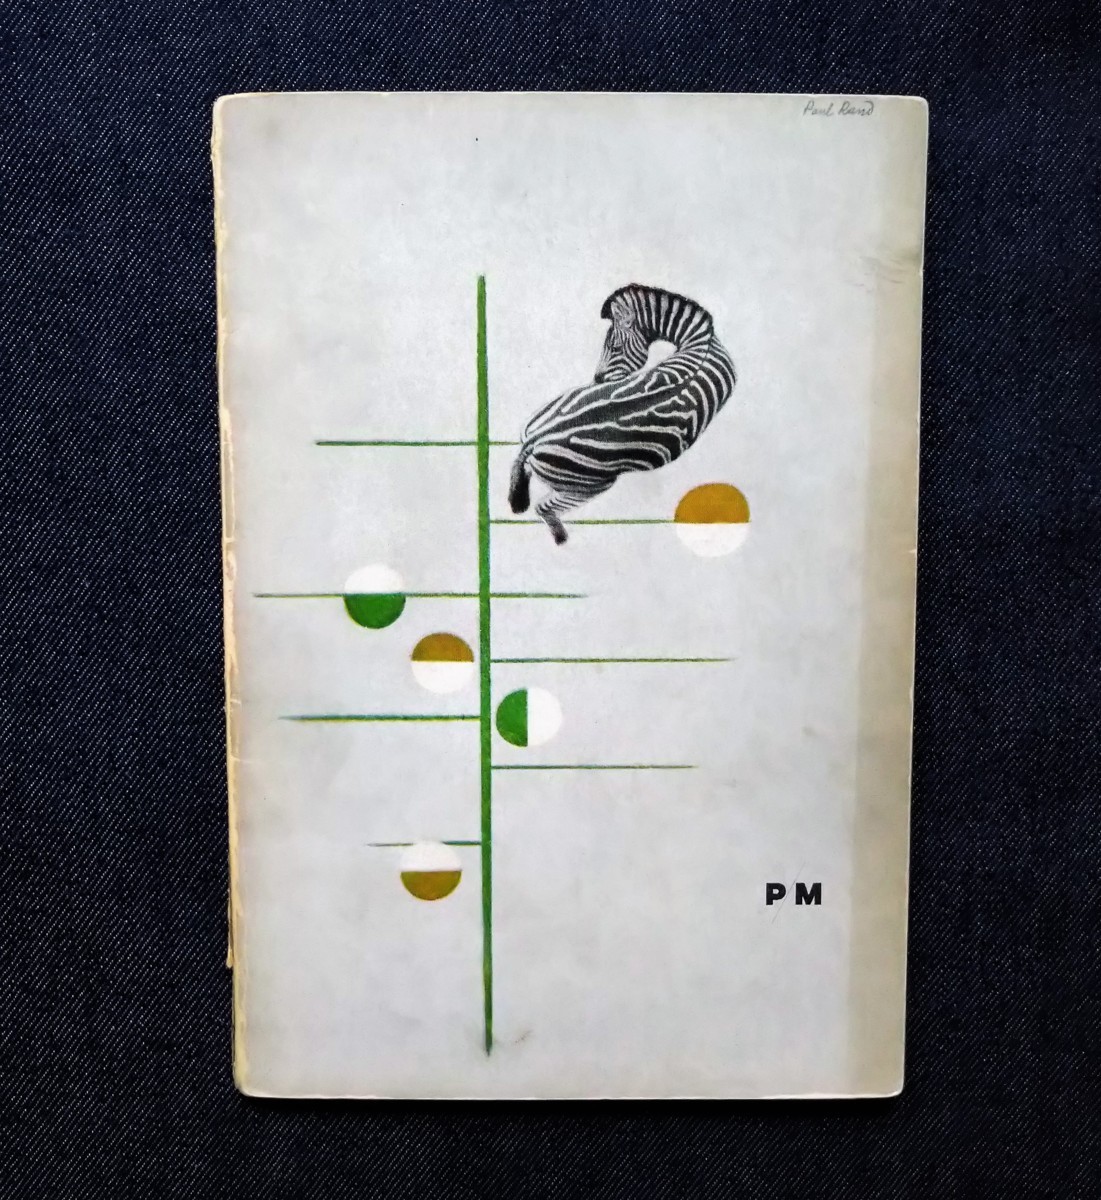 ポール・ランド 表紙デザイン・特集 1938年 Paul Rand/PM magazine ウォーカー・エバンス グラフィック タイポグラフィ Rockwell Kent